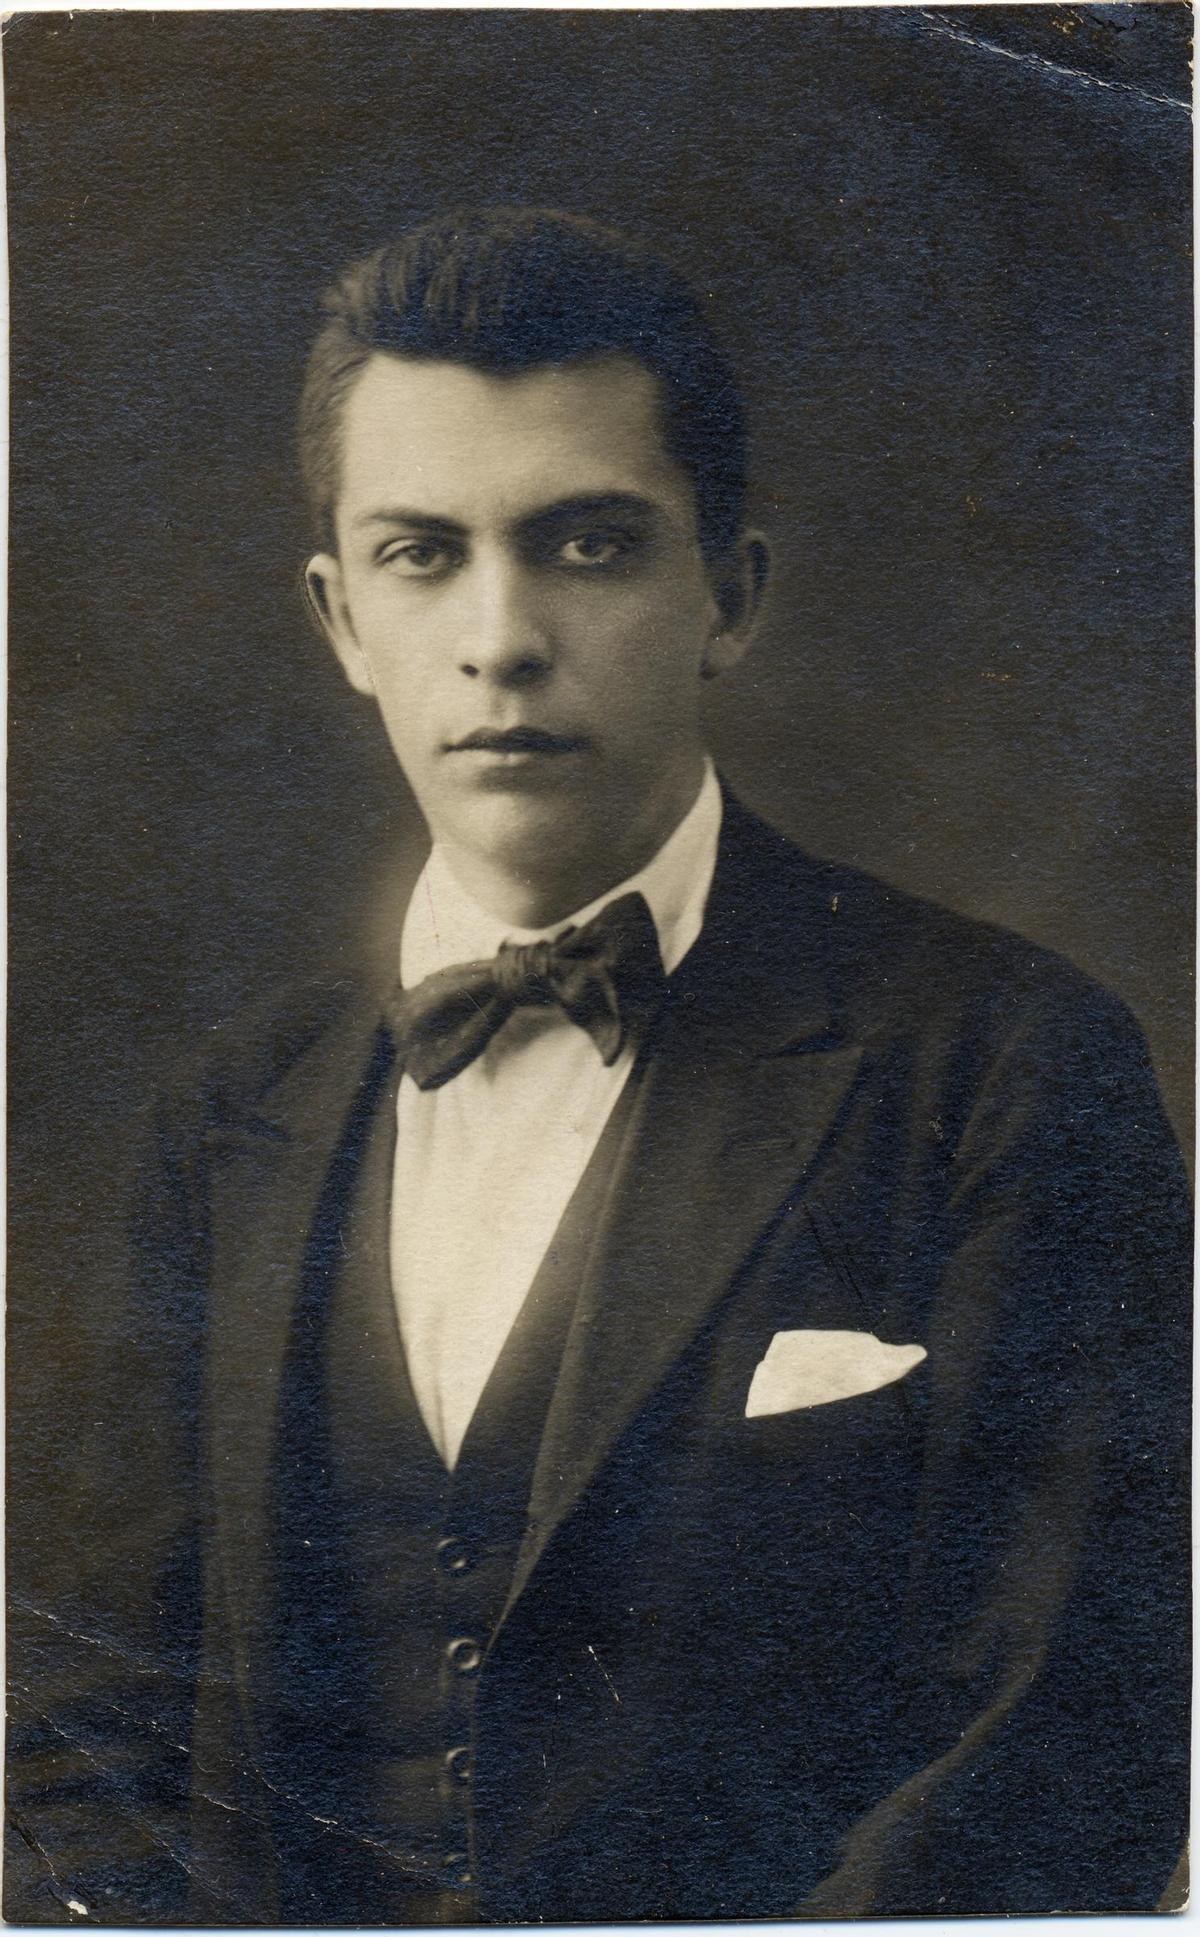 Una fotografía de Chaves Nogales durante su juventud, hacia 1914